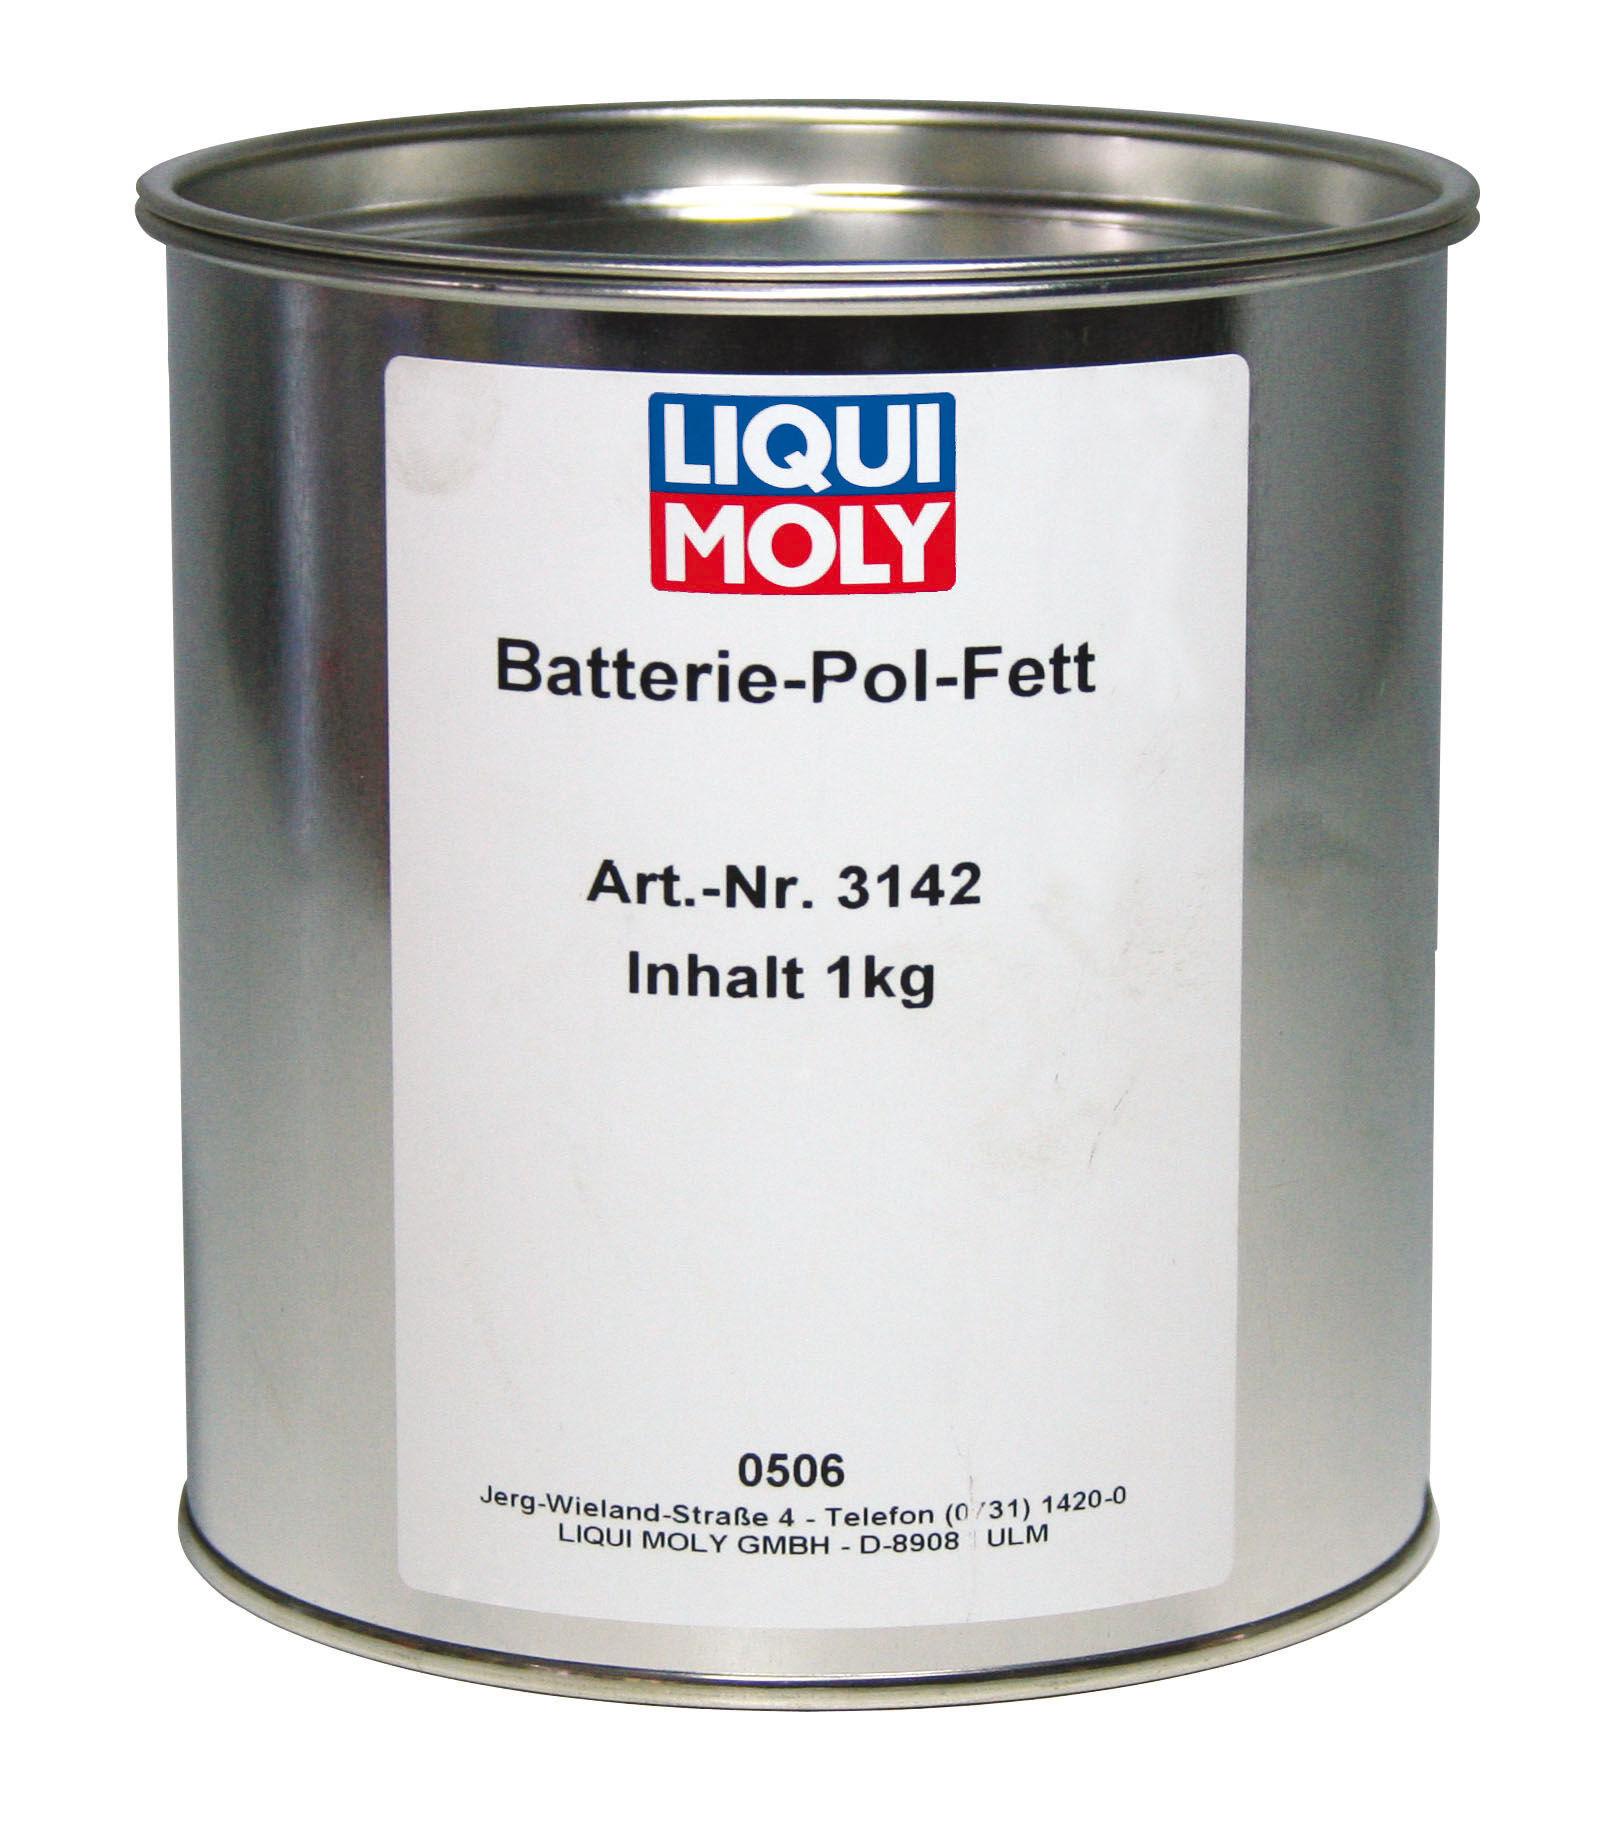 Liqui Moly Batterie-Pol-Fett Batteriepolfett Fett Paste 1kg